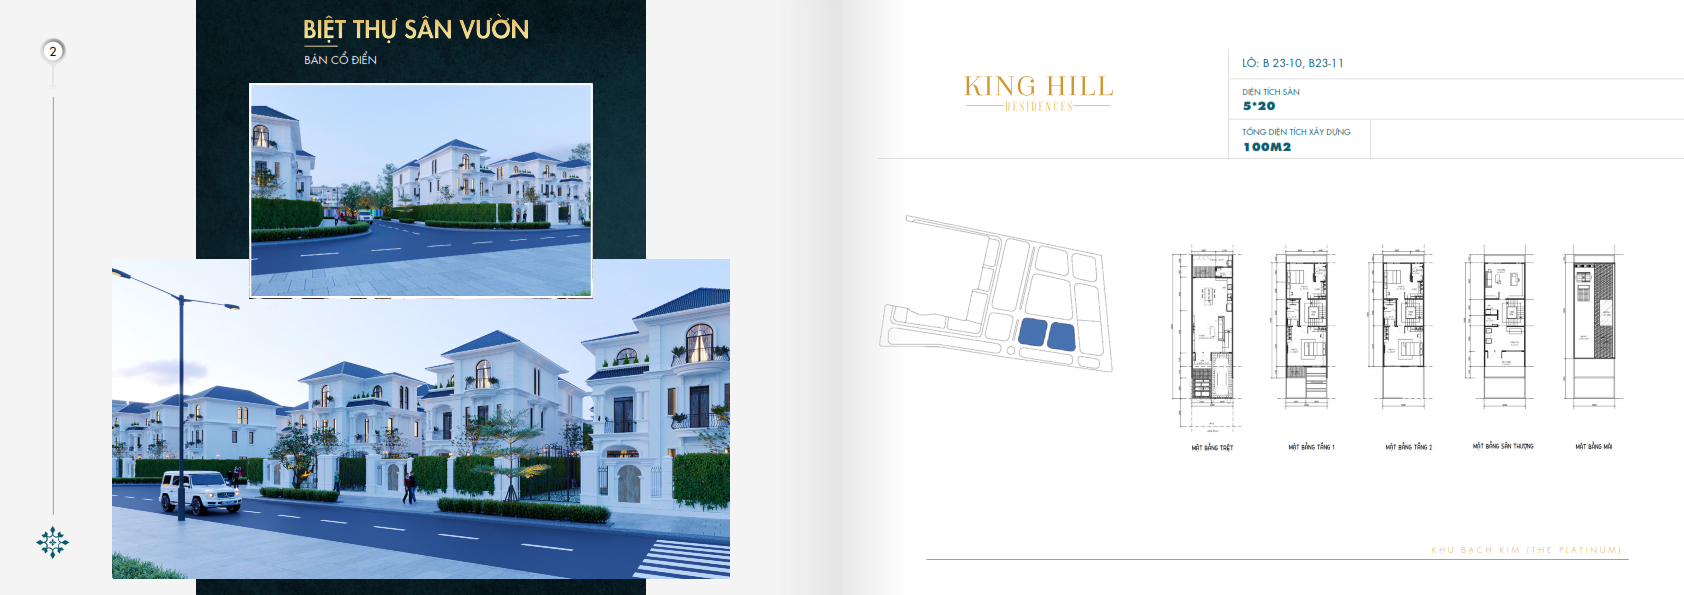 Biet thu san vuon Du an King Hill Residences - King Hill Residences